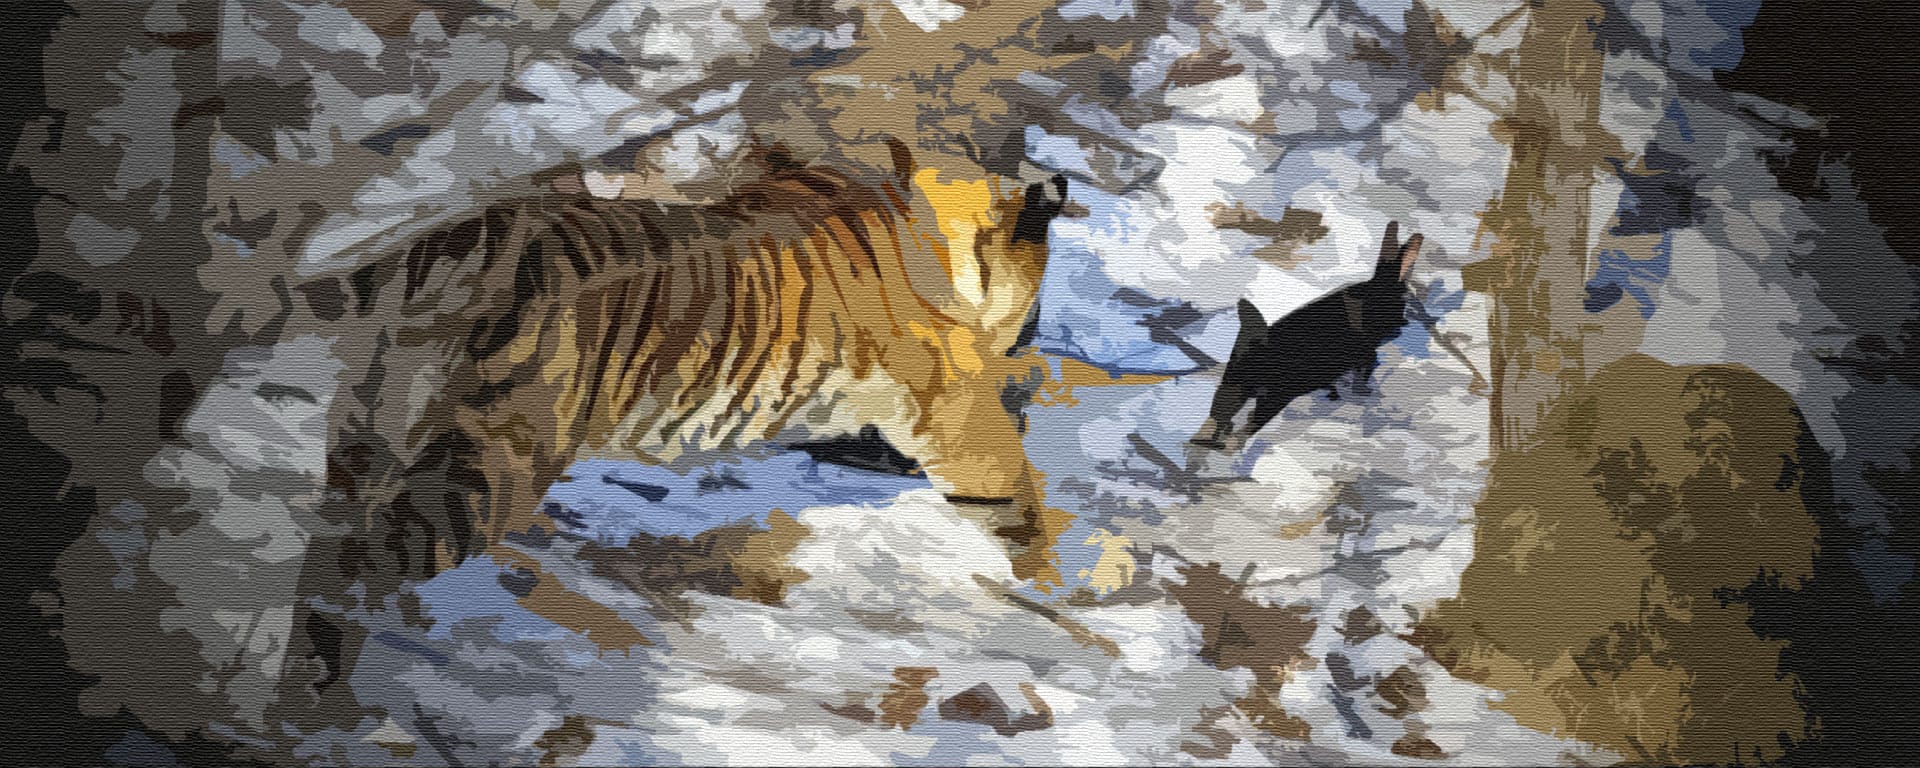 Тигр и хитрый заяц